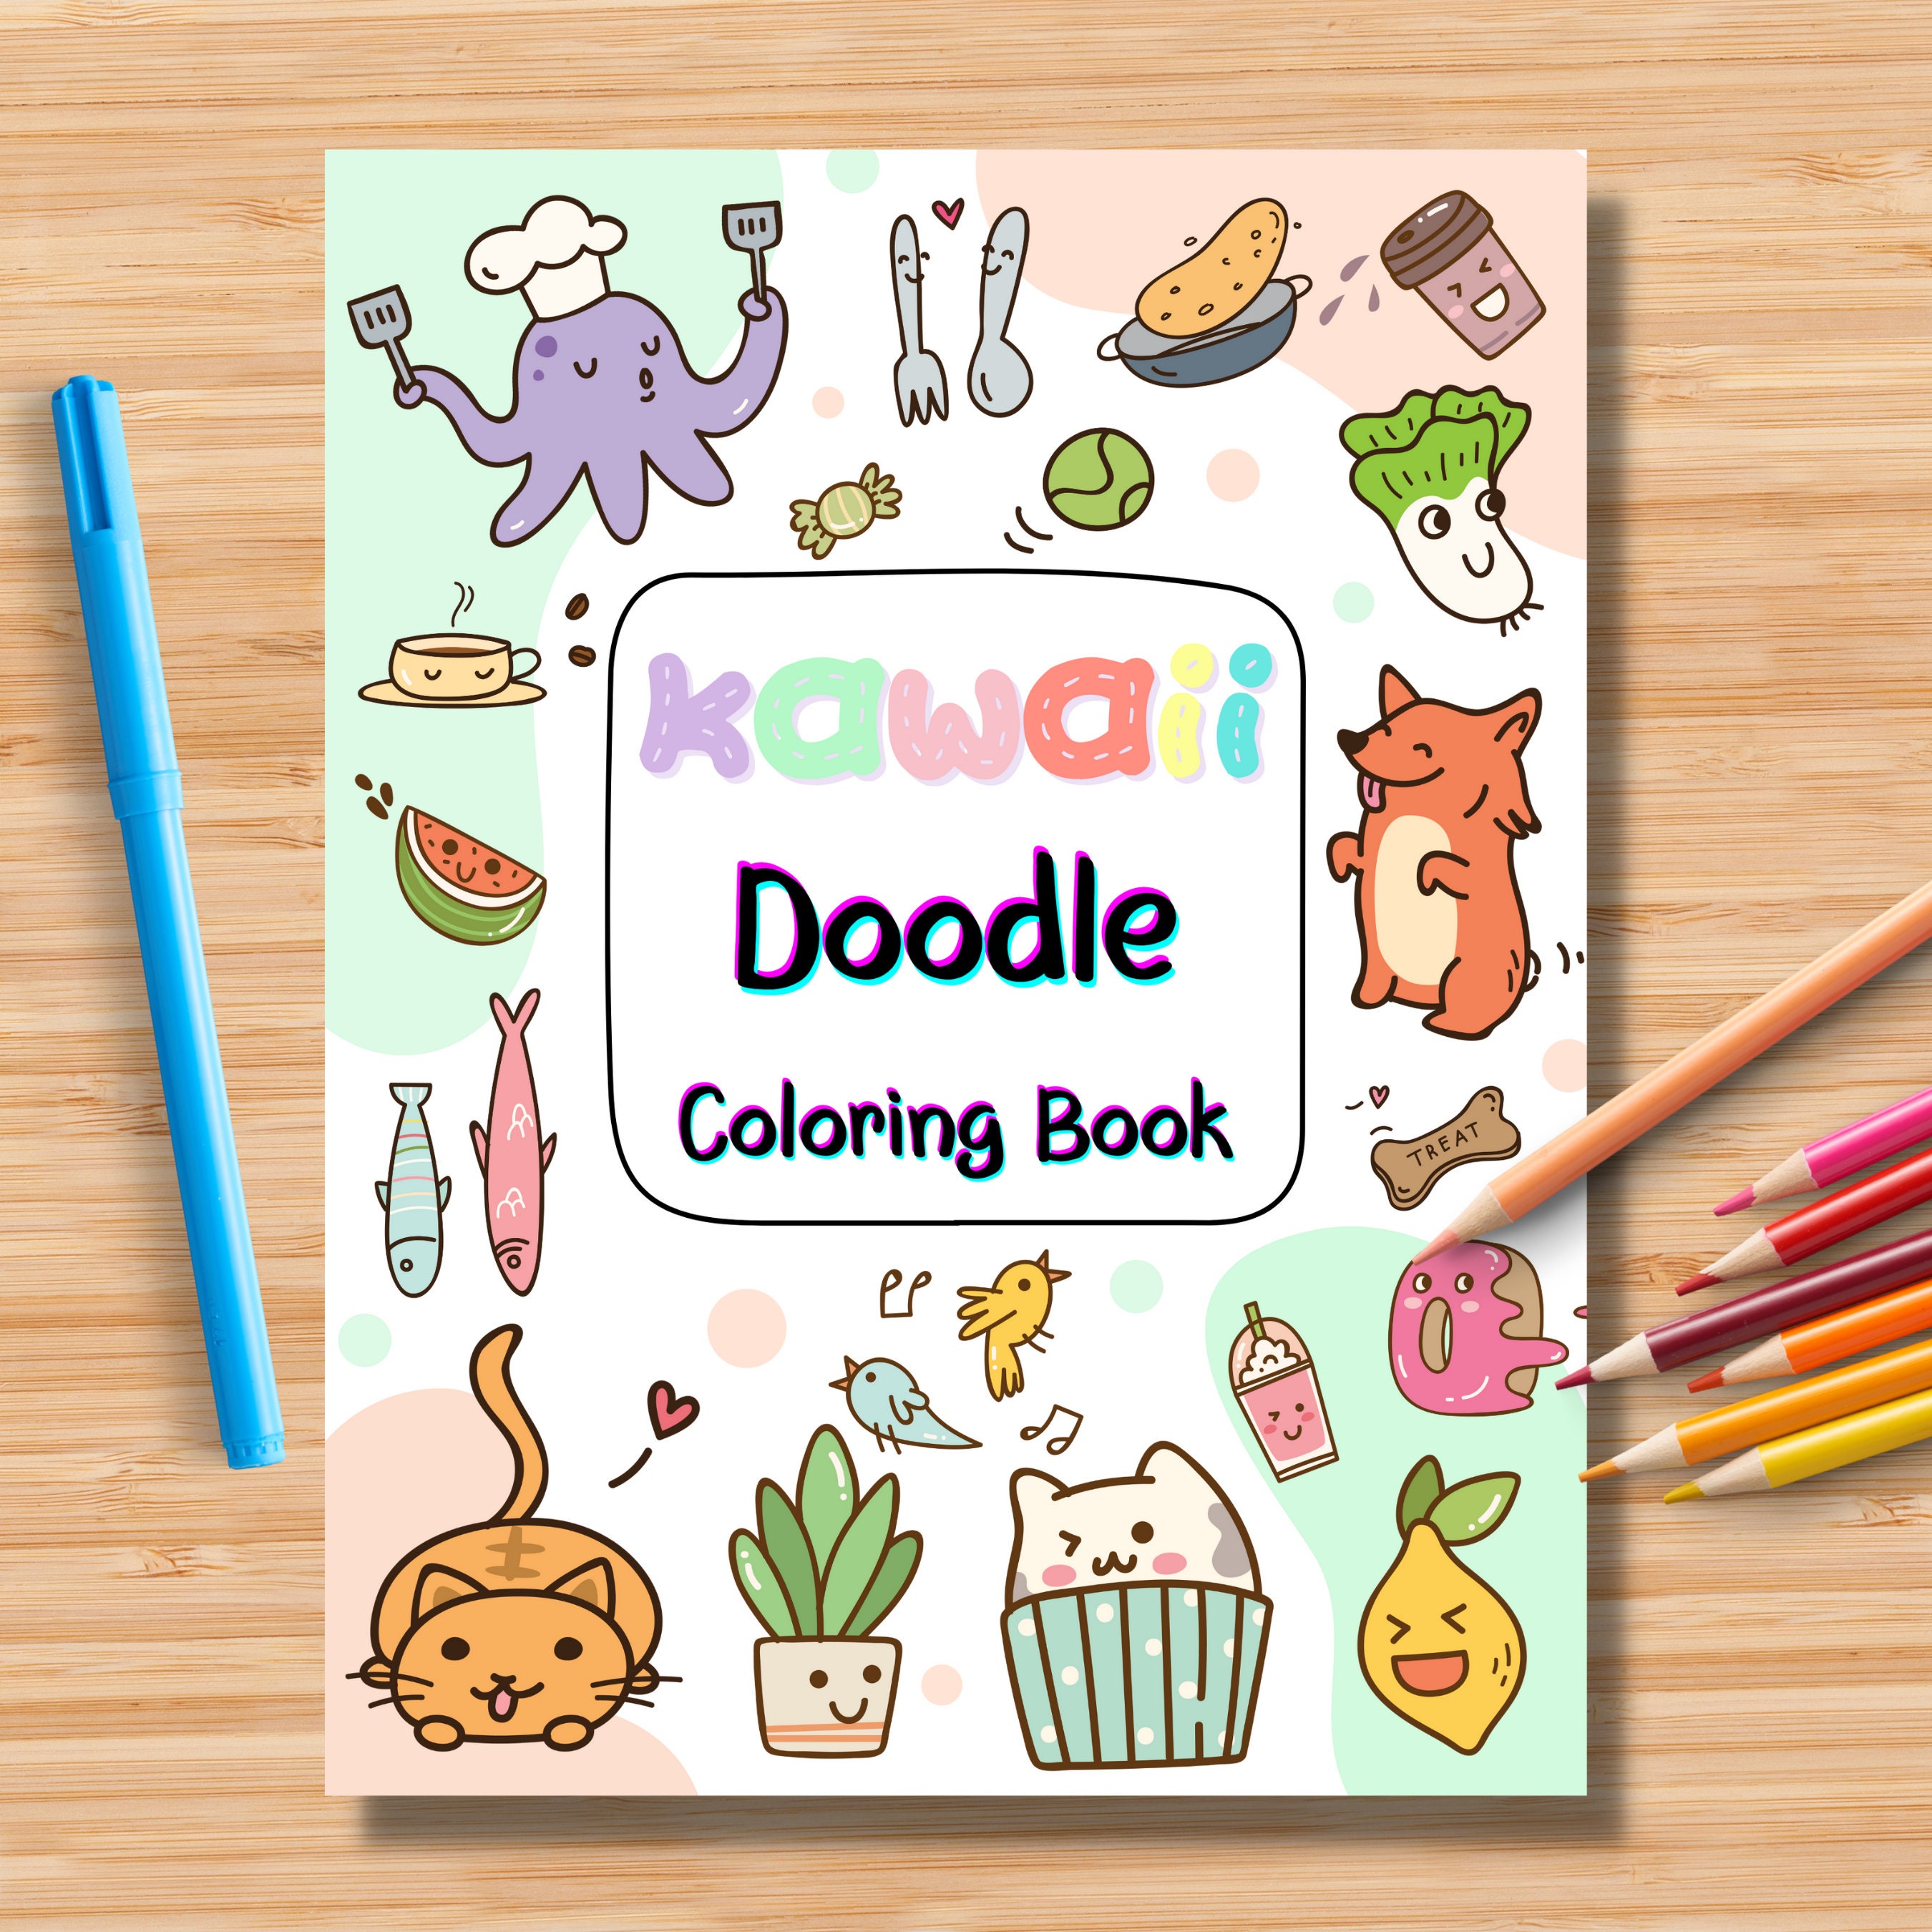 PRINTABLE Cute kawaii Coloring Page, Hand-Drawn Coloring Sheet, cute  Doodles Coloring Page, Kids Coloring Page, Adult Coloring